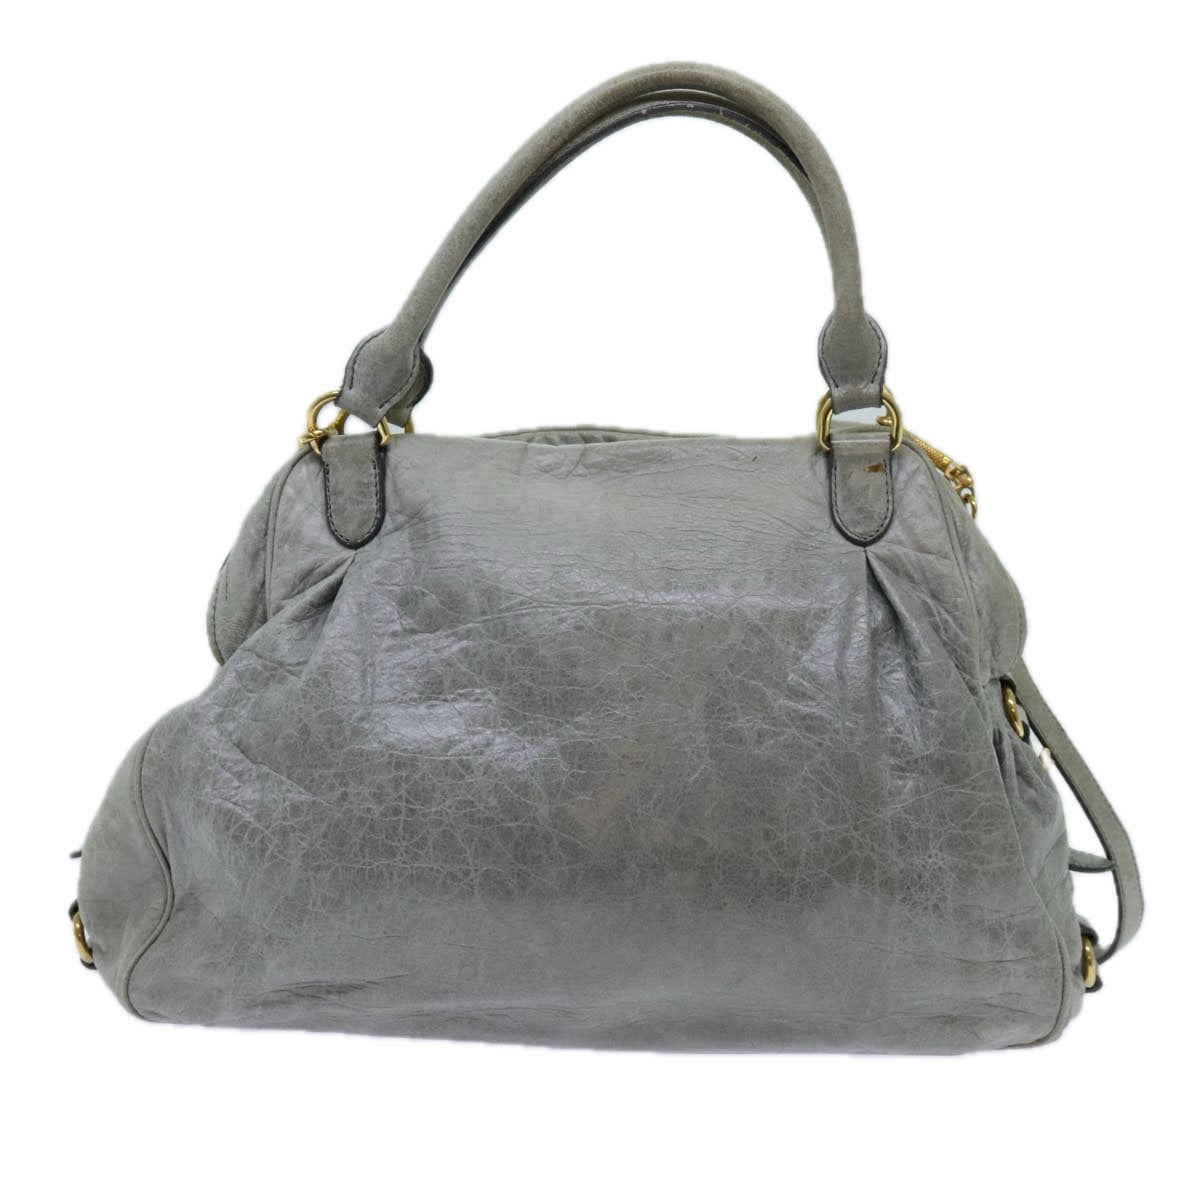 Miu Miu Hand Bag Leather 2way Gray Auth hk1213 - 0